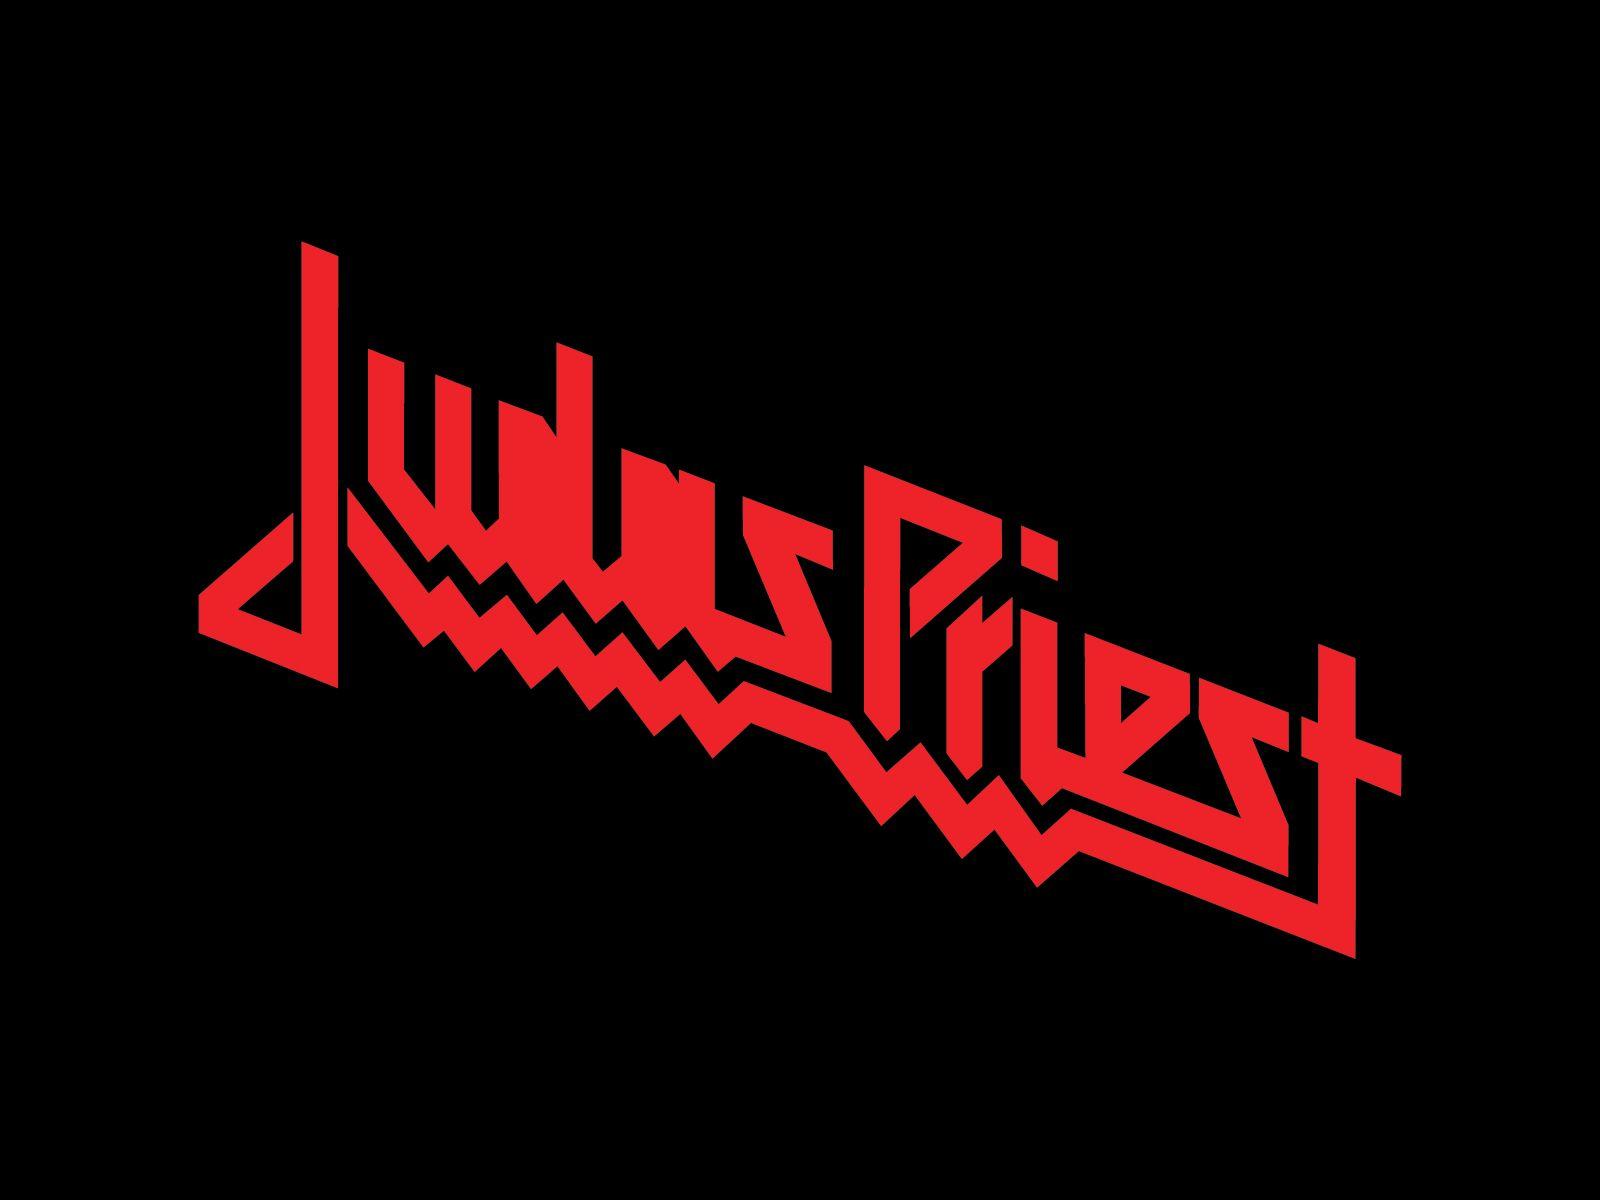 Judas Priest wallpaper. Band logos band logos, metal bands